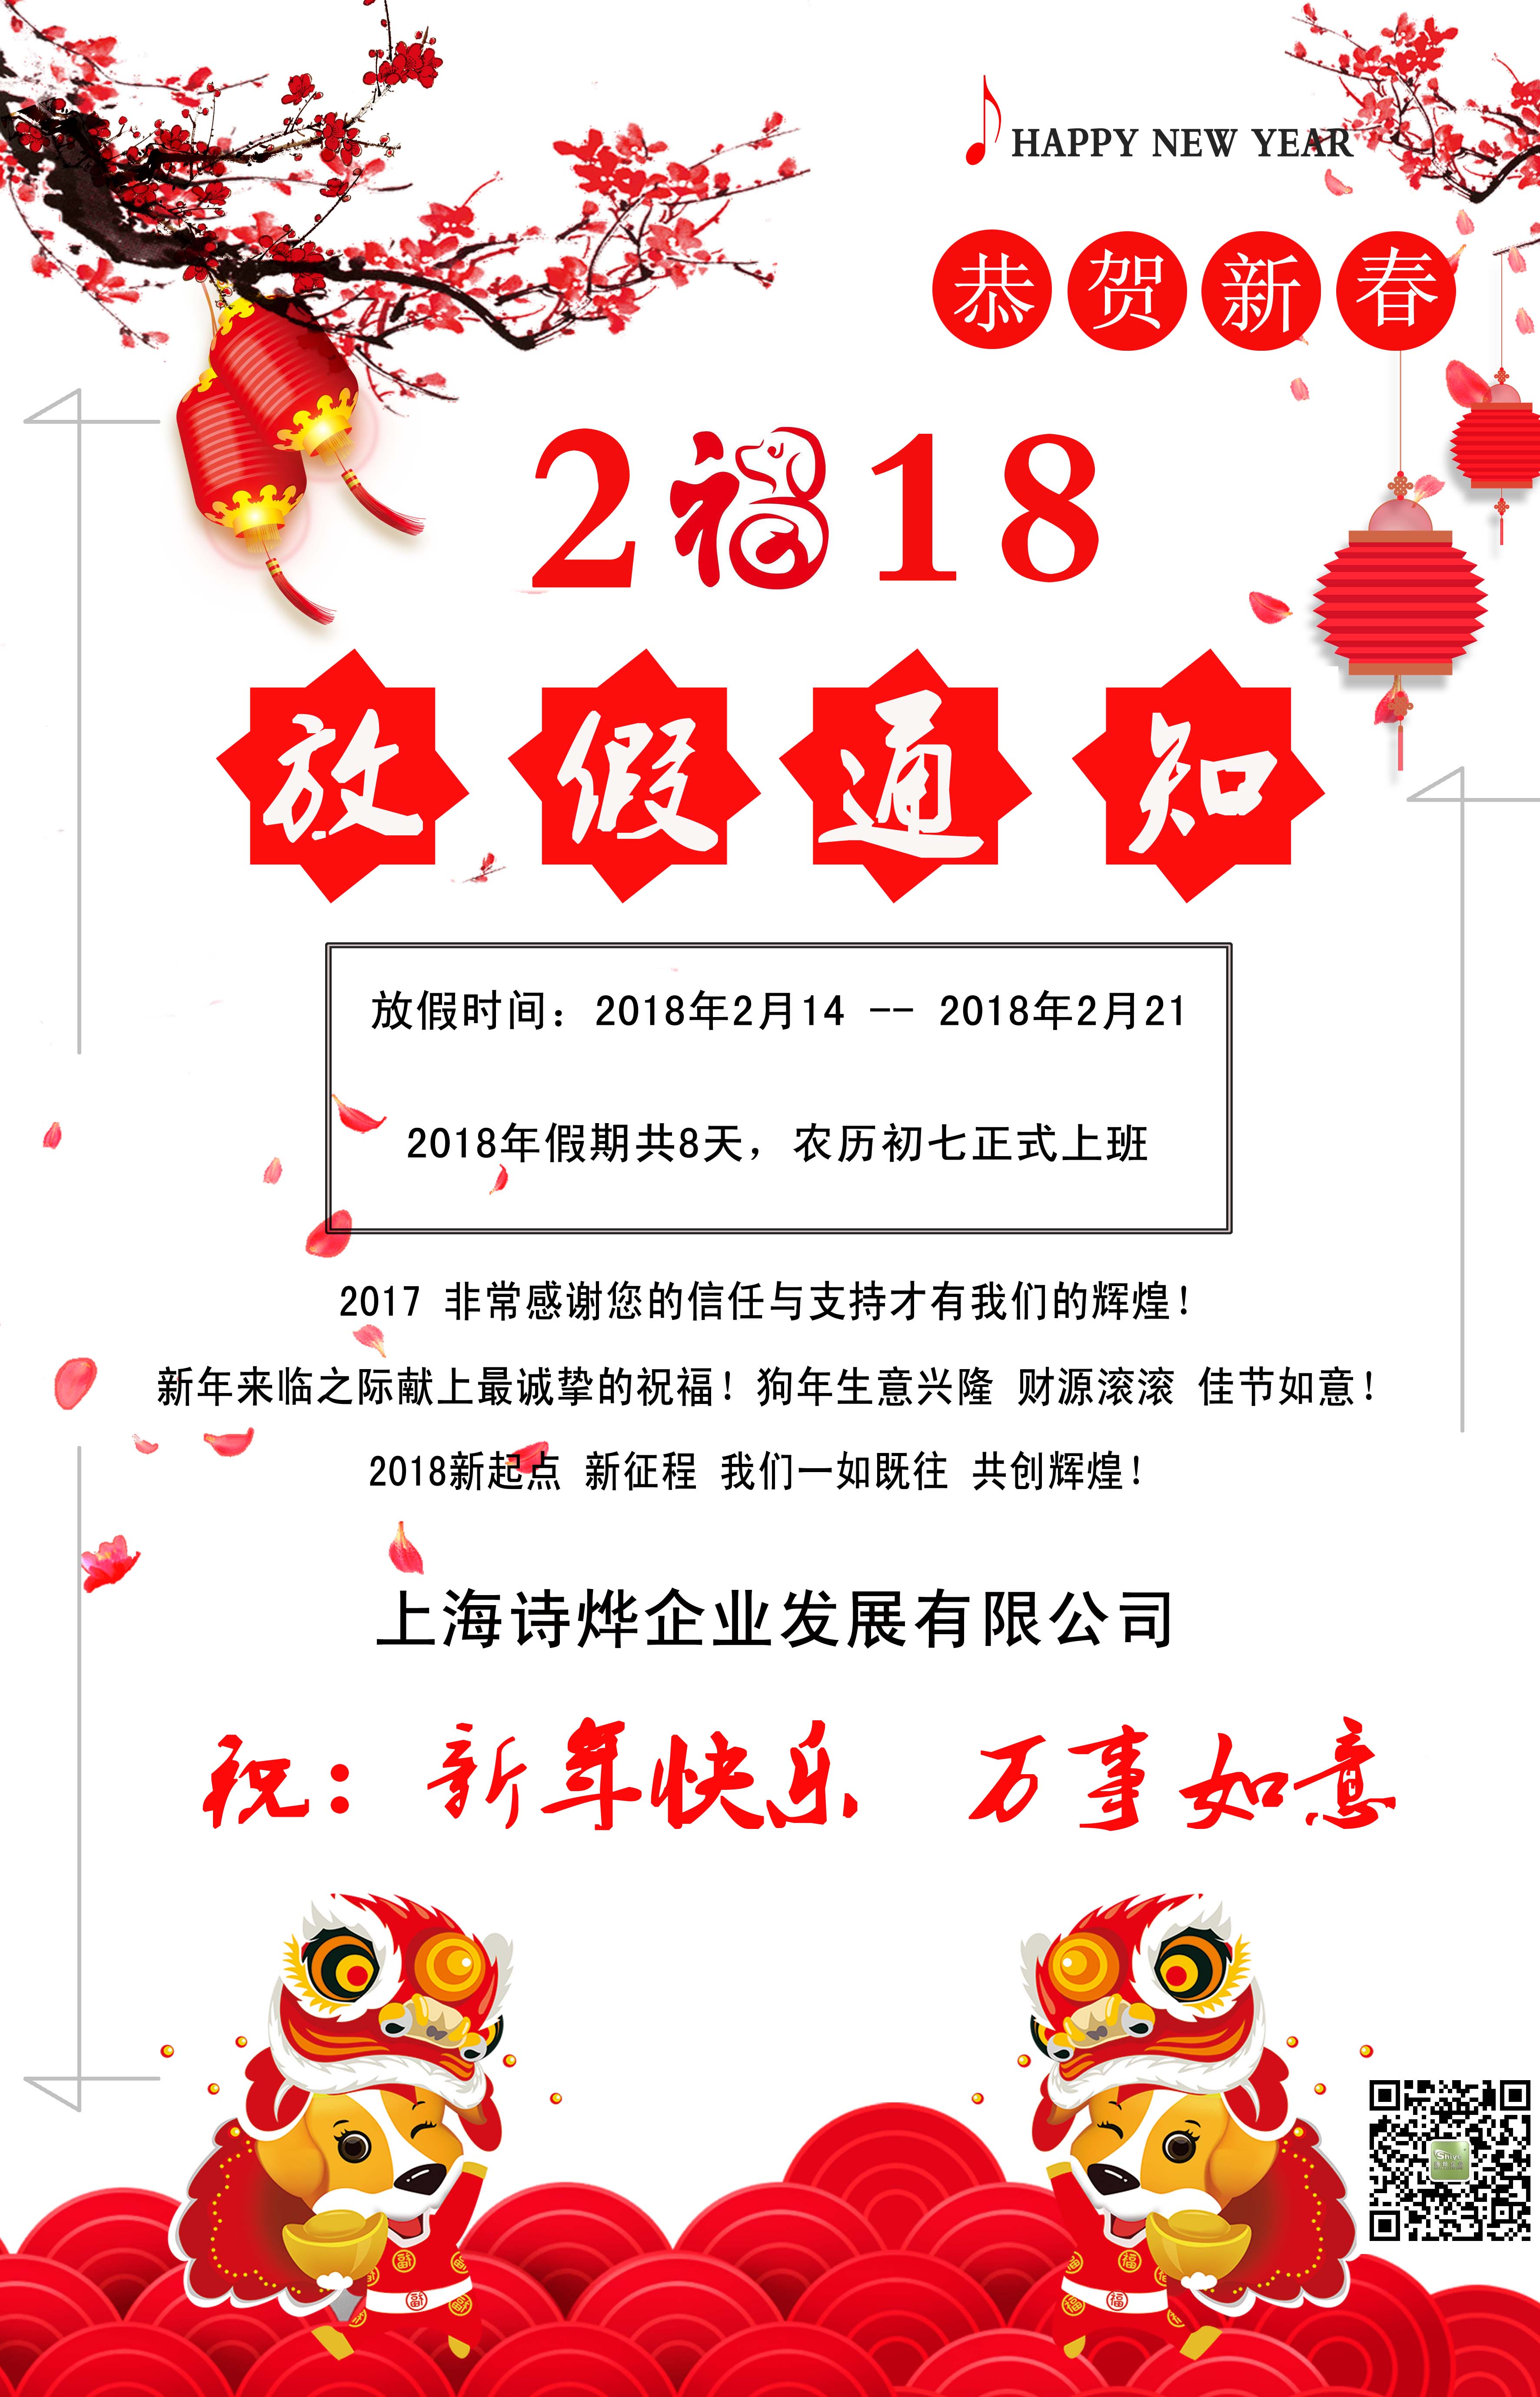 上海诗烨企业2018春节放假通知